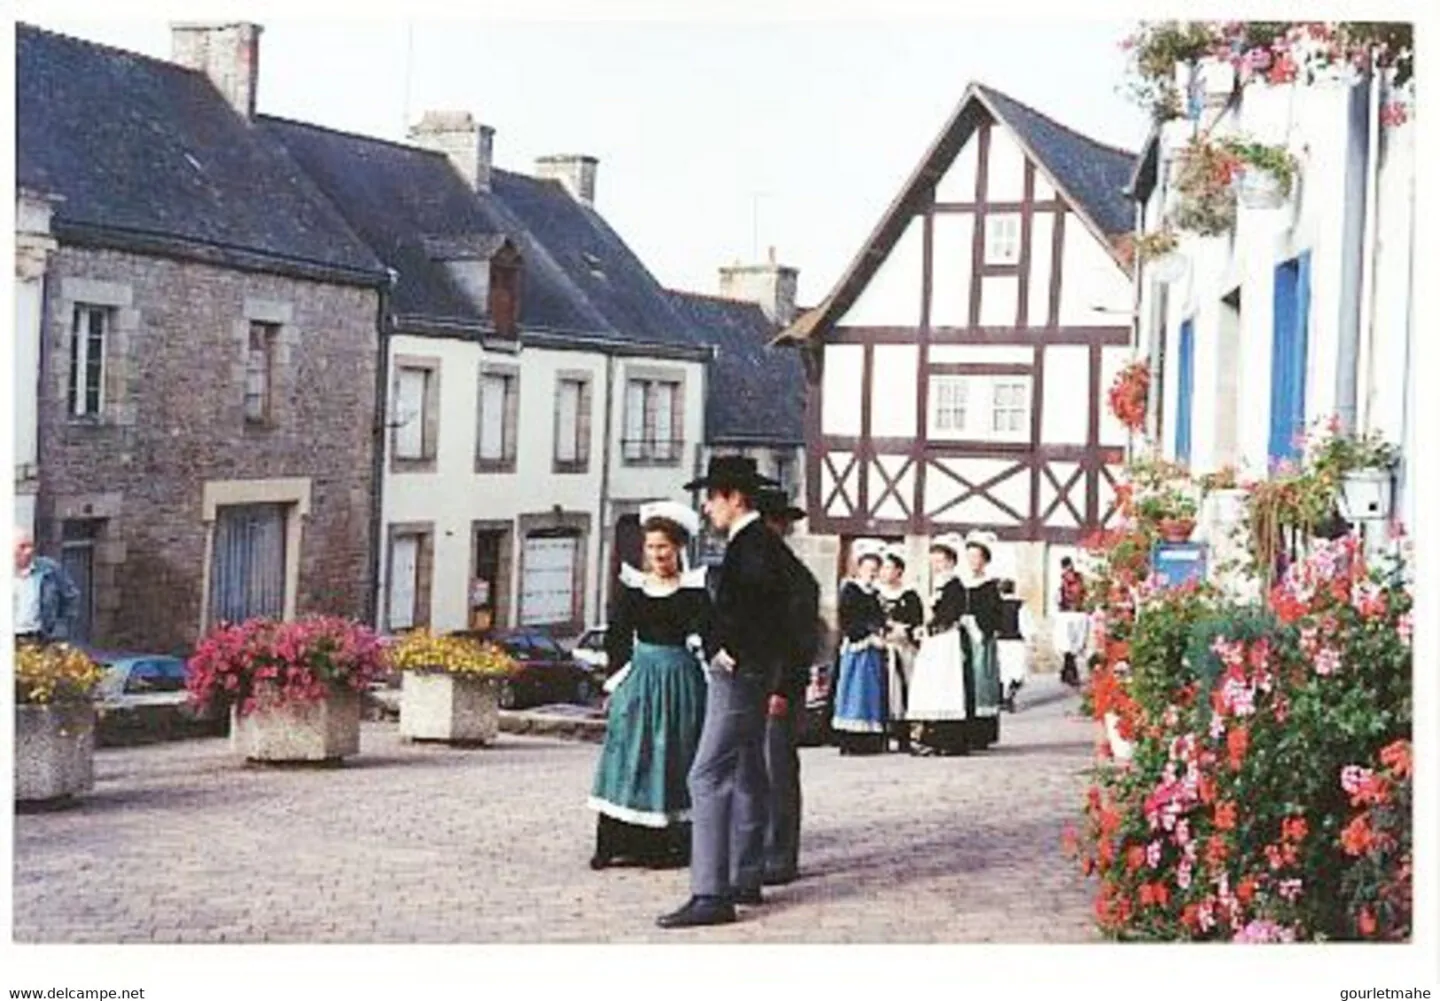 Villes et Villages Fleuris Bretagne